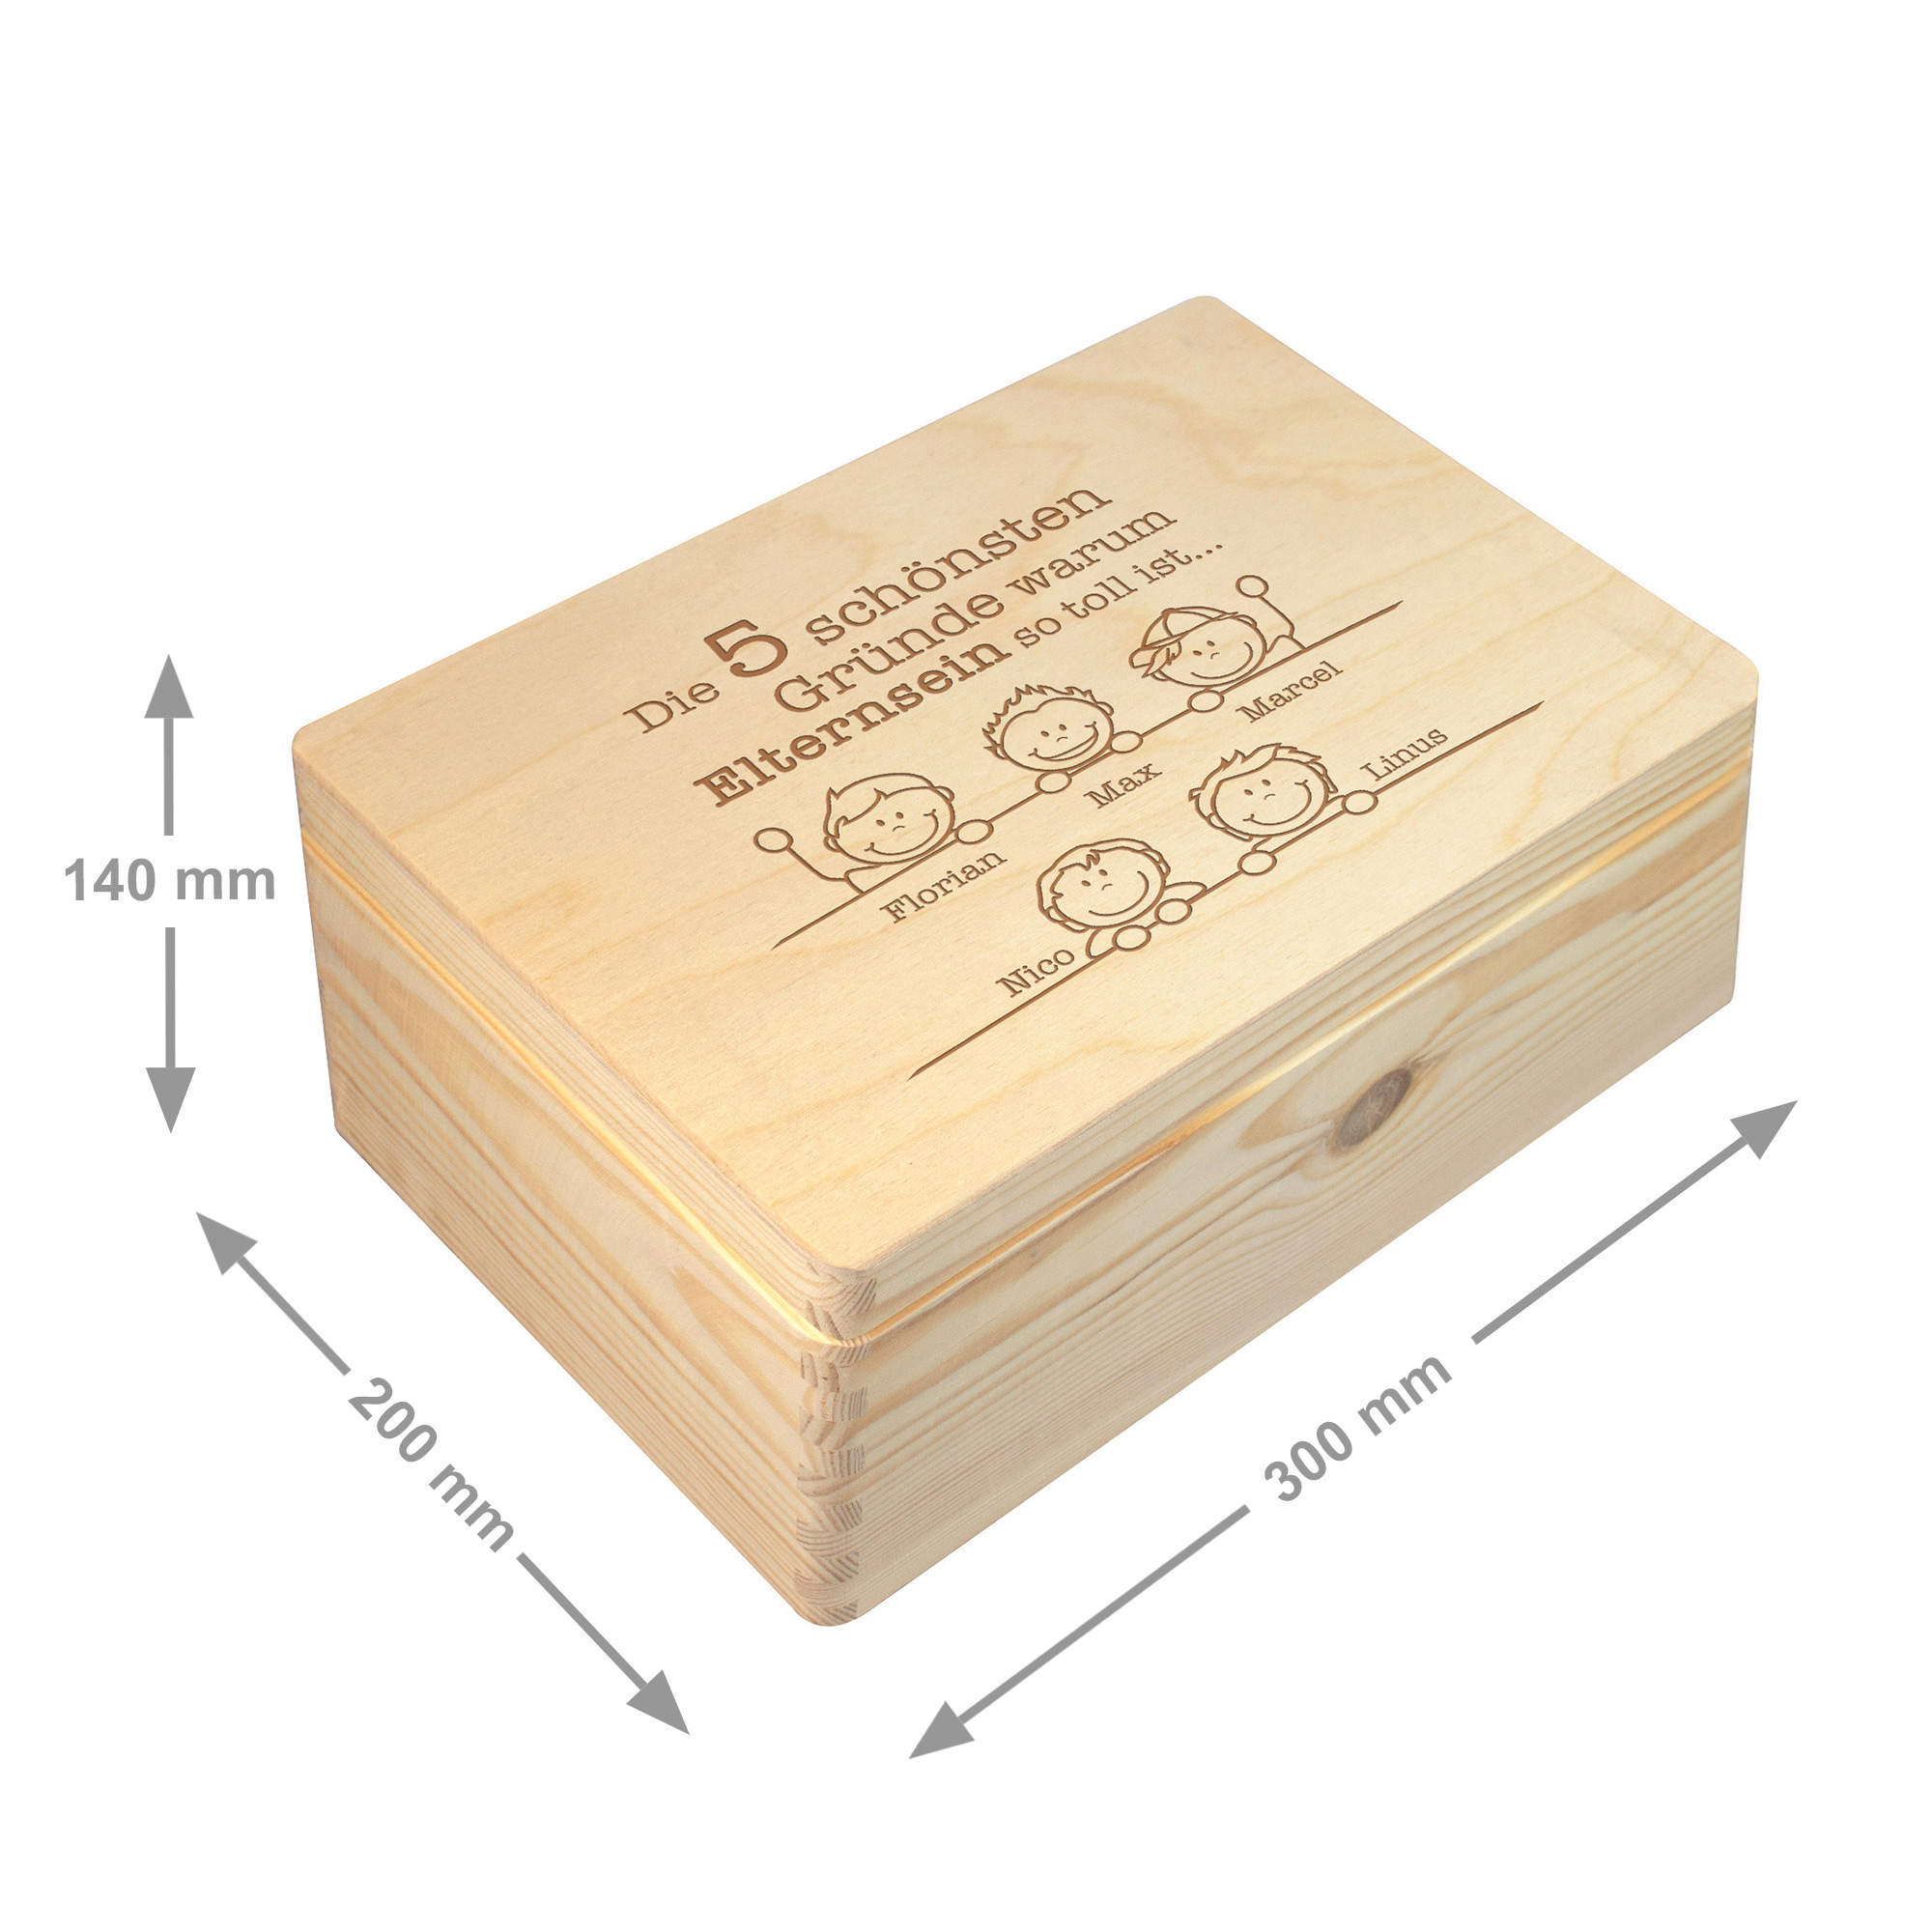 Erinnerungsbox Elternsein - Personalisierte Memory Box 7